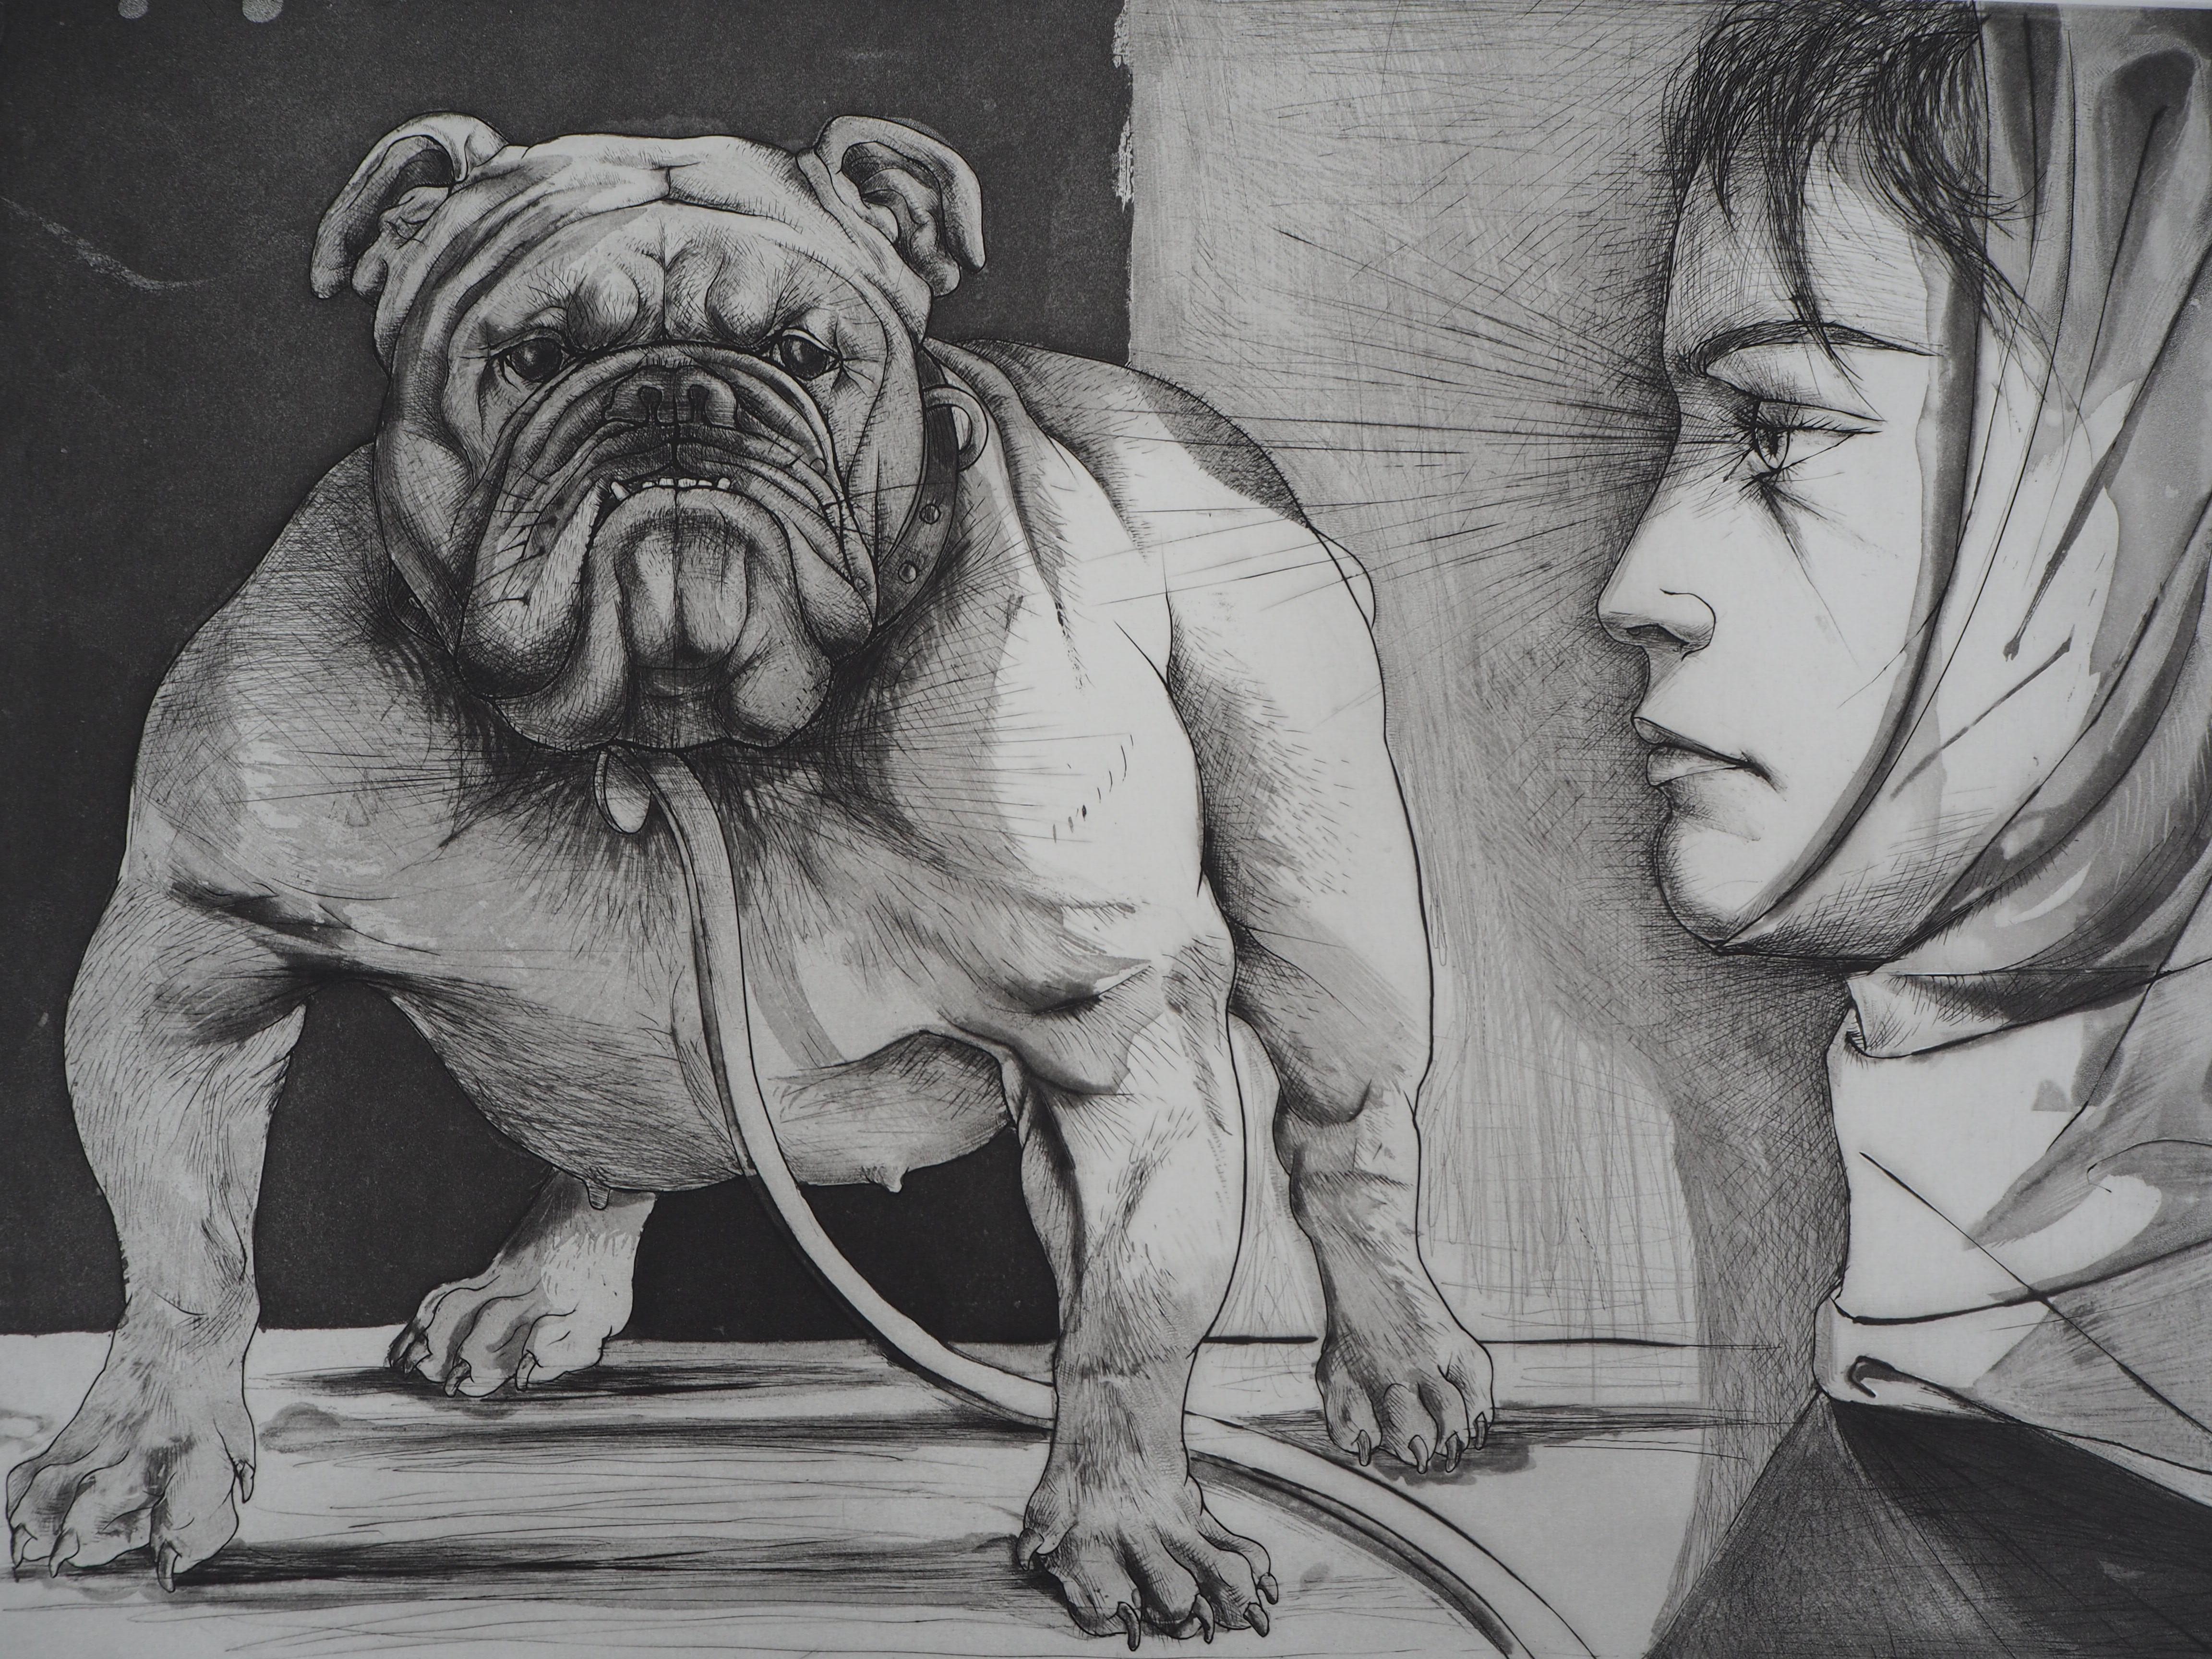 Pierre-Yves TREMOIS
Bulldogge und Frau, 1974

Original-Radierung
Handsigniert mit Bleistift
Begründeter EA oder nummeriert / 80
Auf Vellum 76 x 56 cm (ca. 30 x 22 Zoll)

Ausgezeichneter Zustand